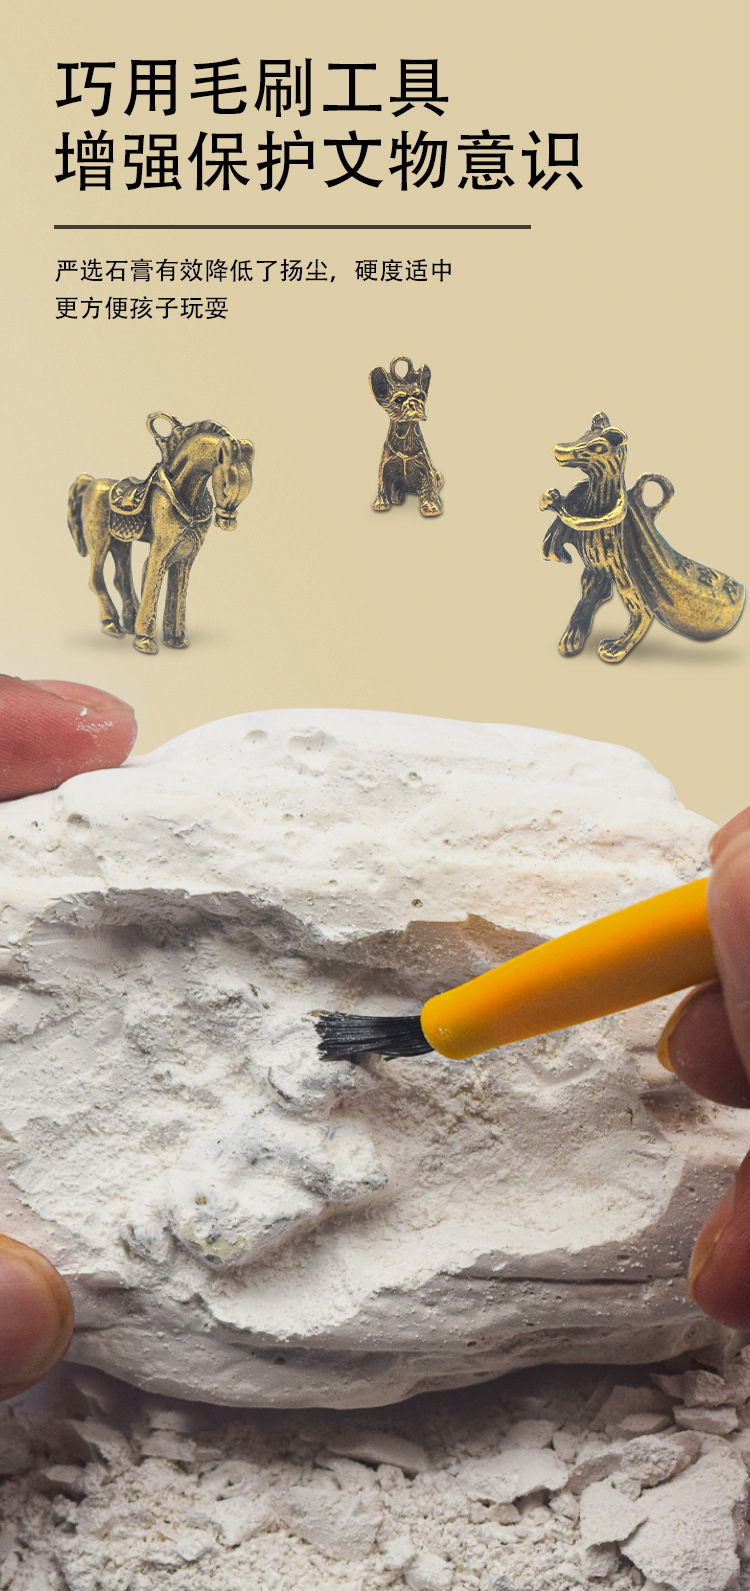 亚马逊考古挖掘手工玩具 十二生肖合金动物科学探索儿童益智玩具地摊小玩具热卖详情20